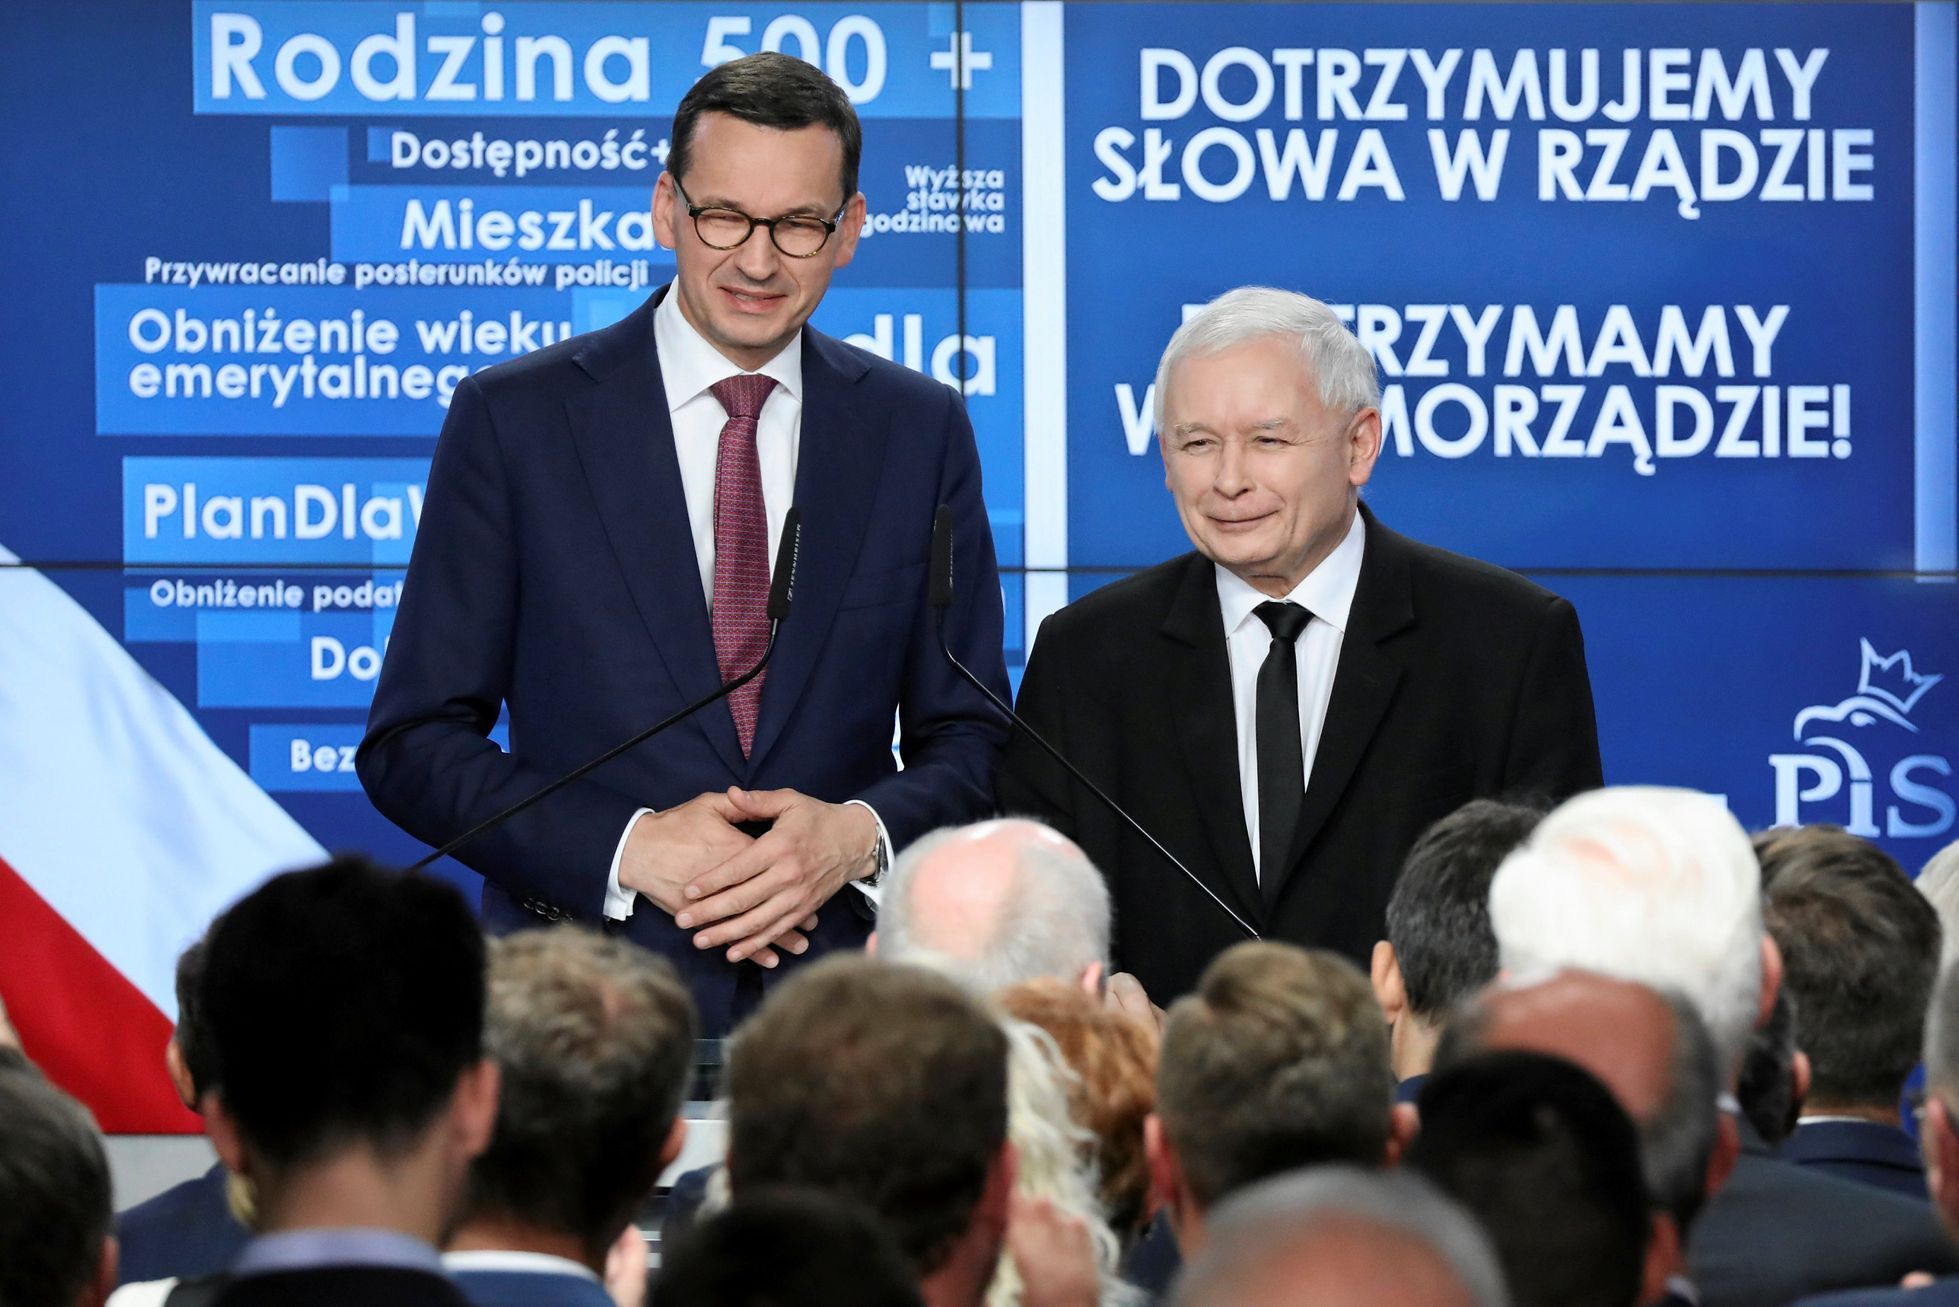 Polský premiér Mateusz Morawiecki a lídr strany Právo a spravedlnost (PiS) Jaroslaw Kaczynski.